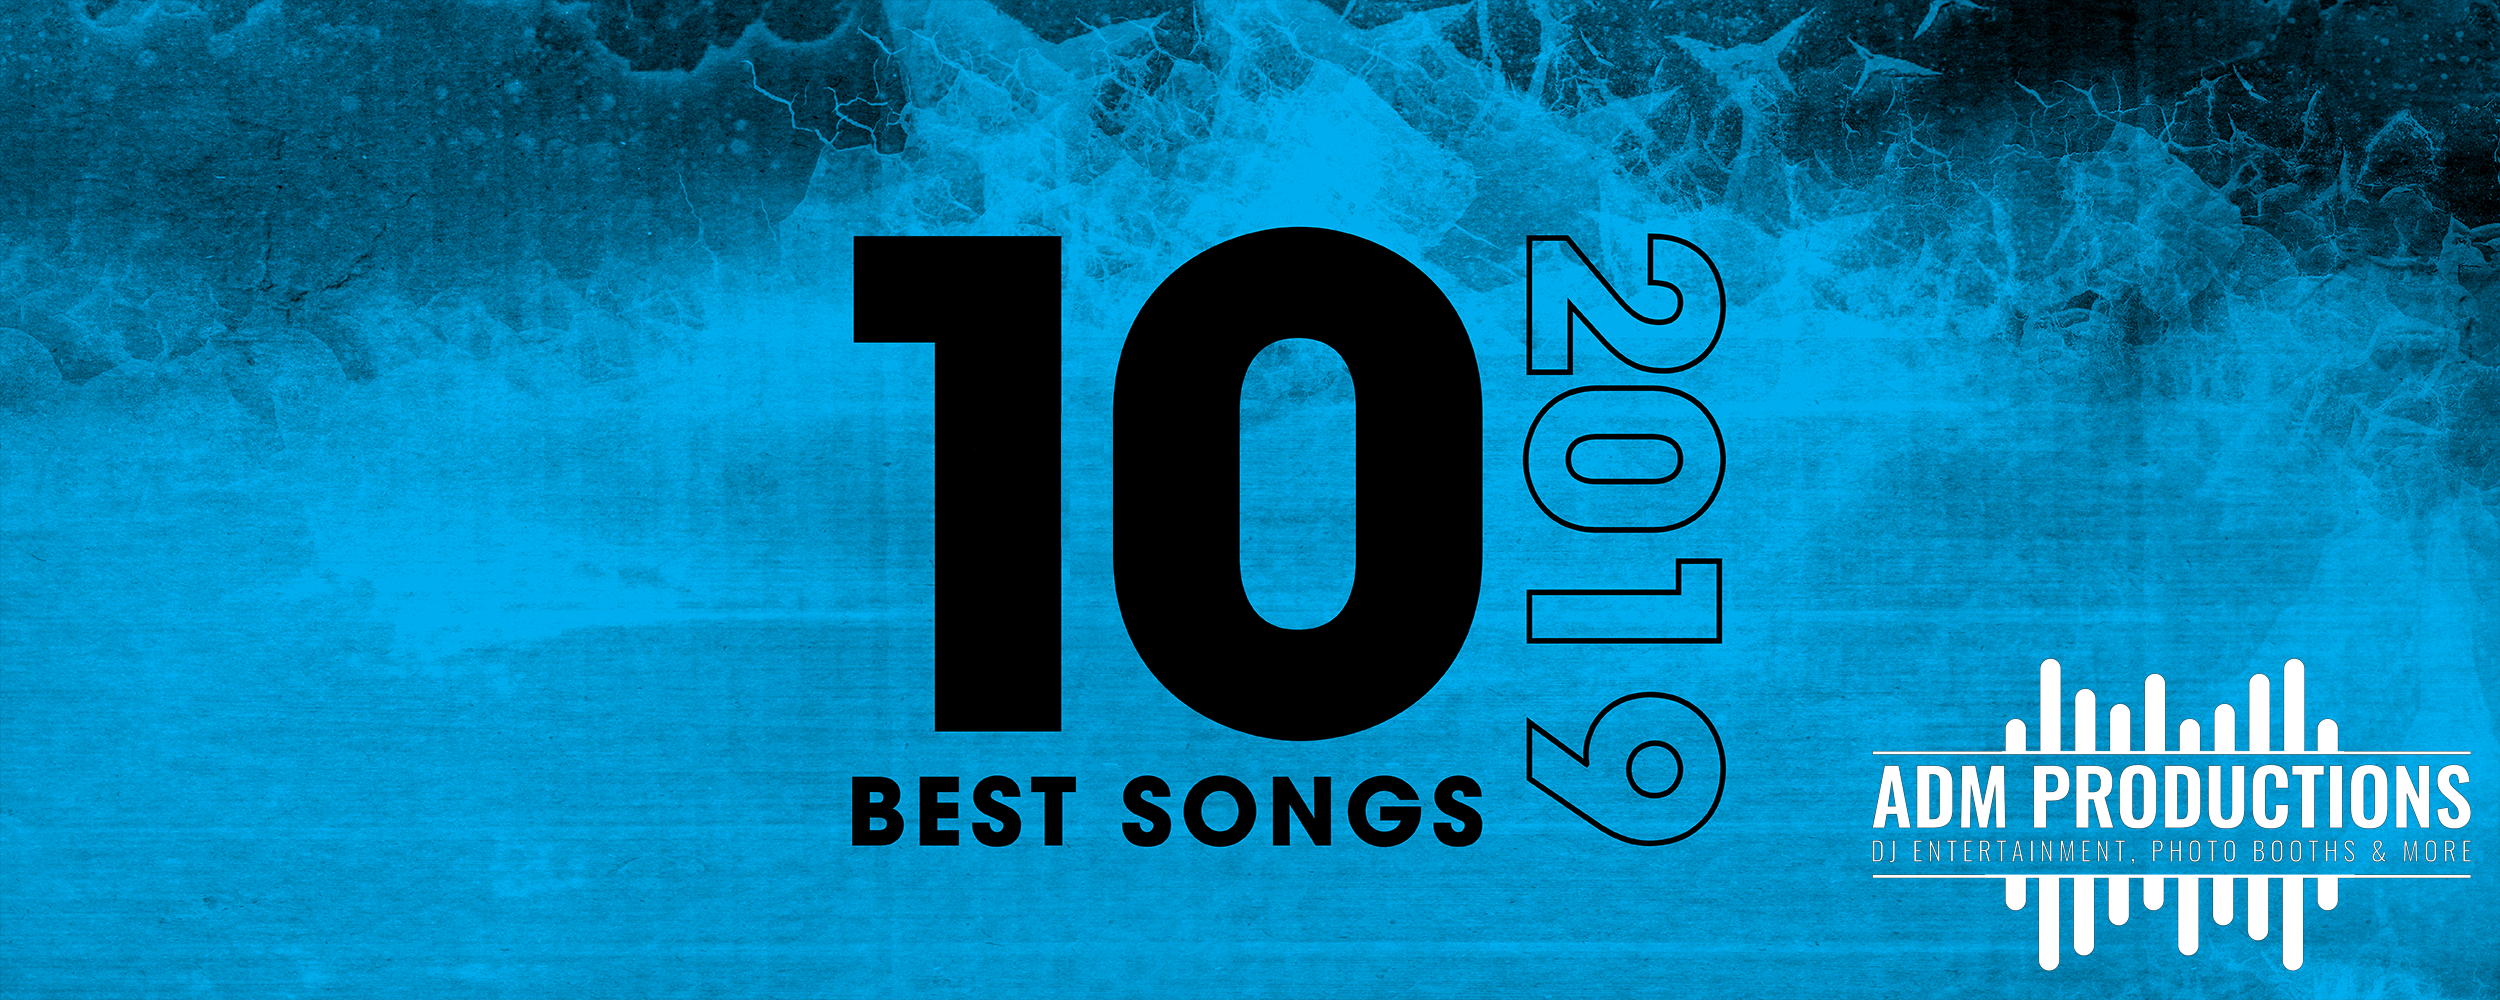 utah top 10 songs of 2019 - ADM Productions